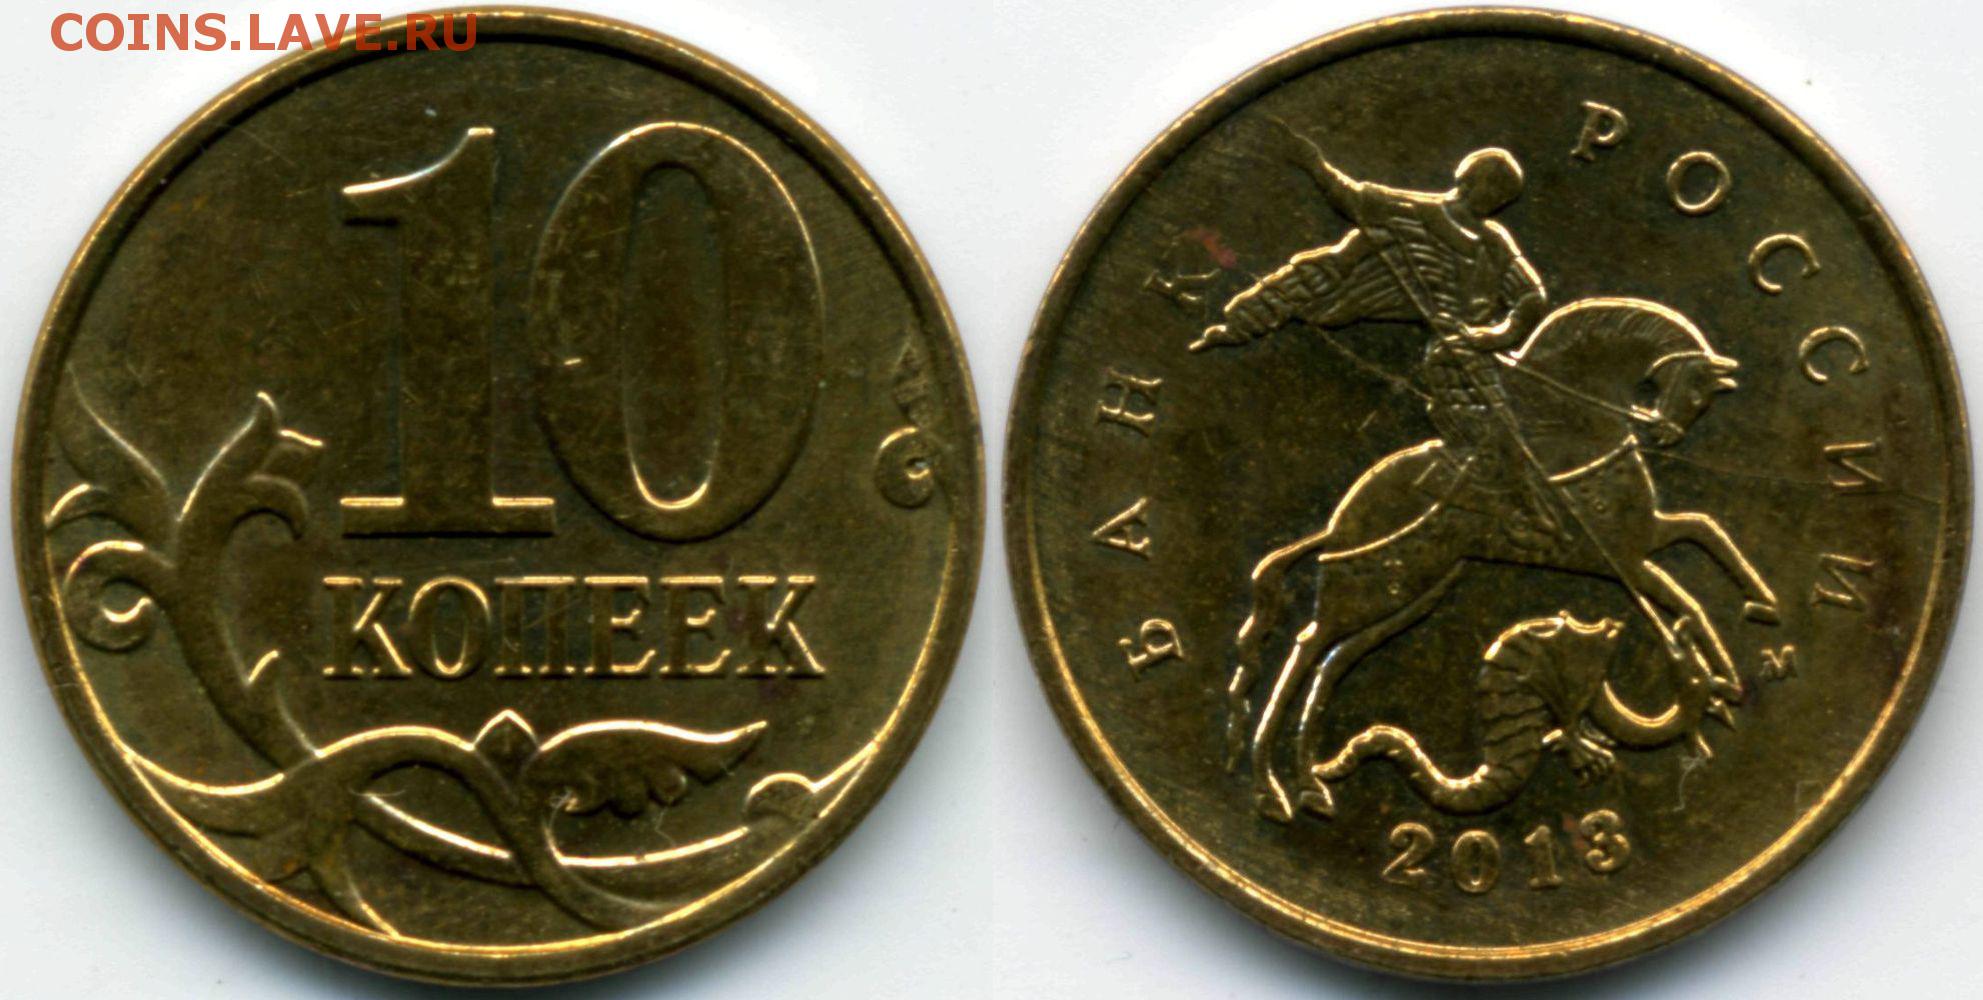 Коп 2014 год. Монета 10 копеек 2010 м XF. 10 Копеек 2014 м. 50 Копеек 2014 года м.